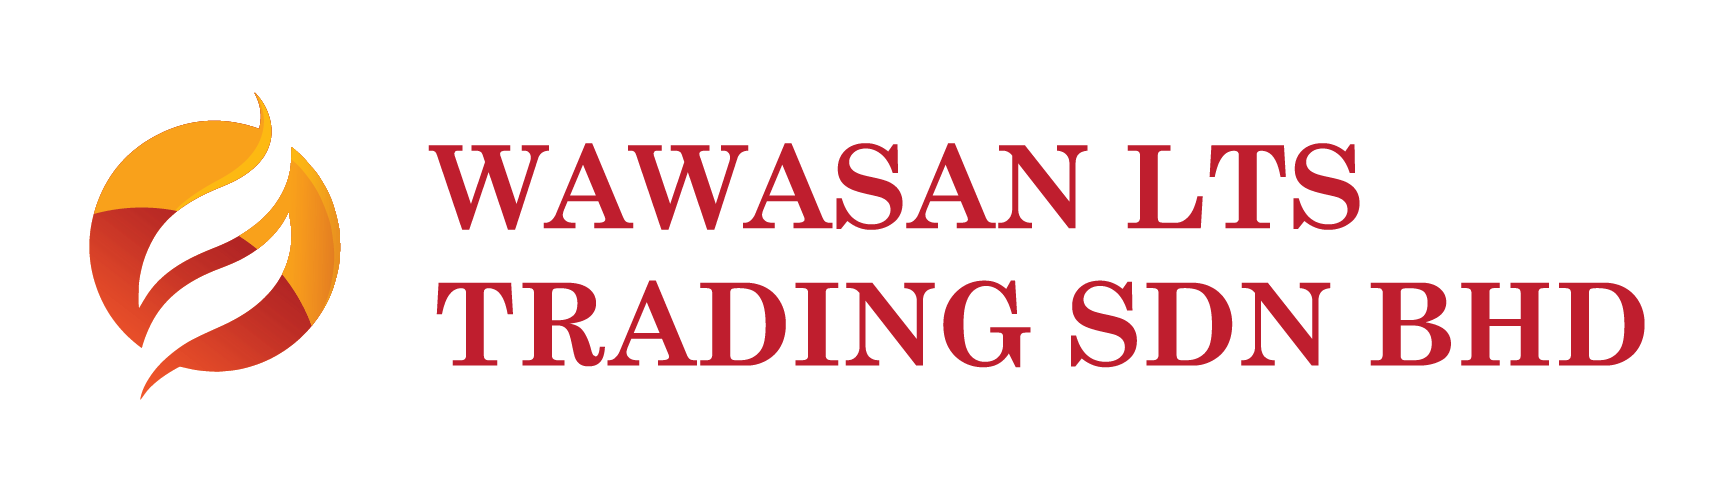 Wawasan LTS Trading